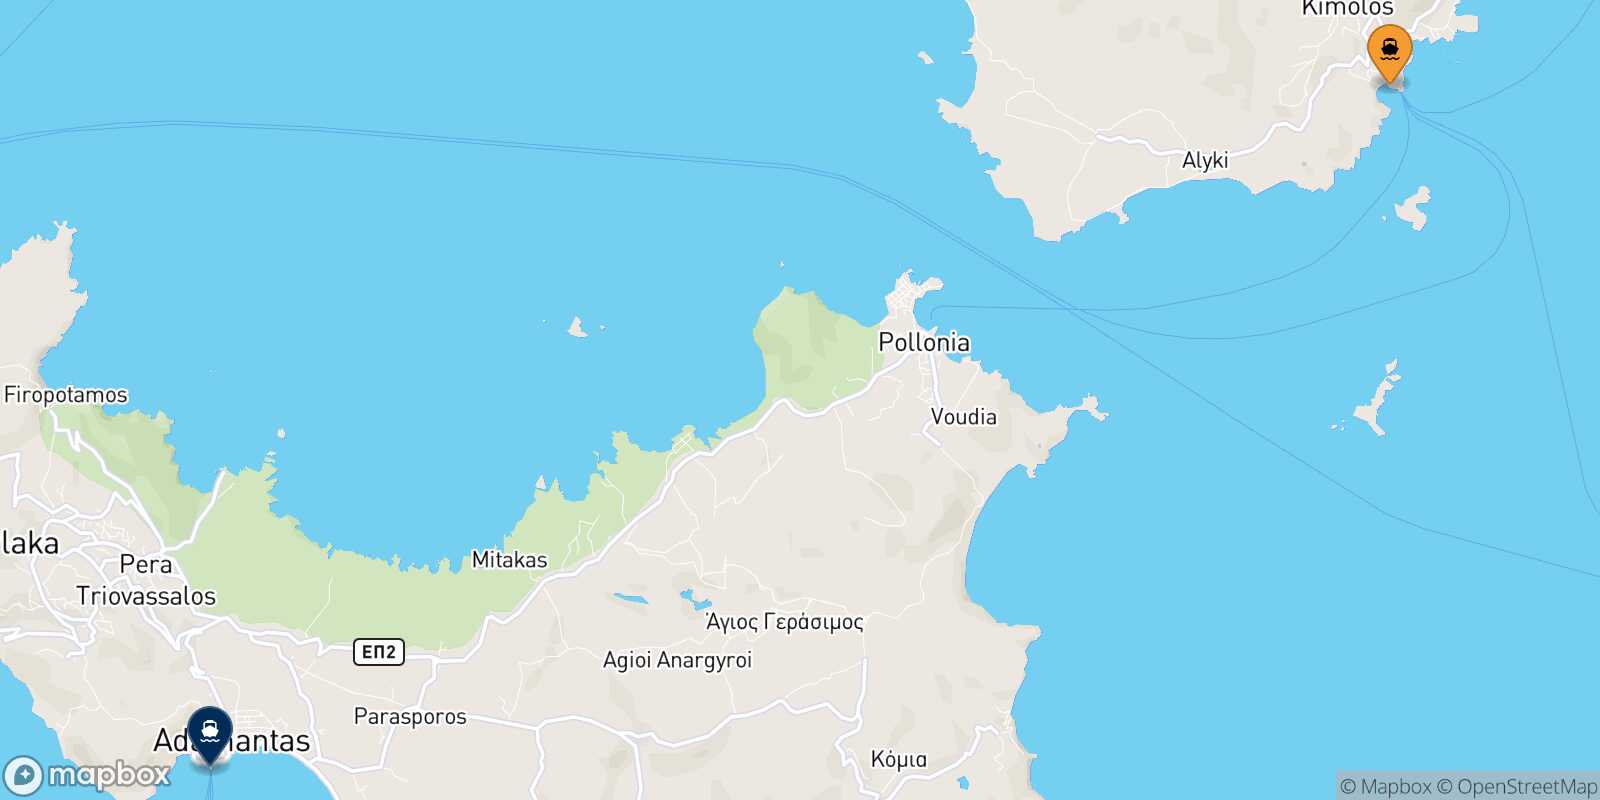 Kimolos Milos route map